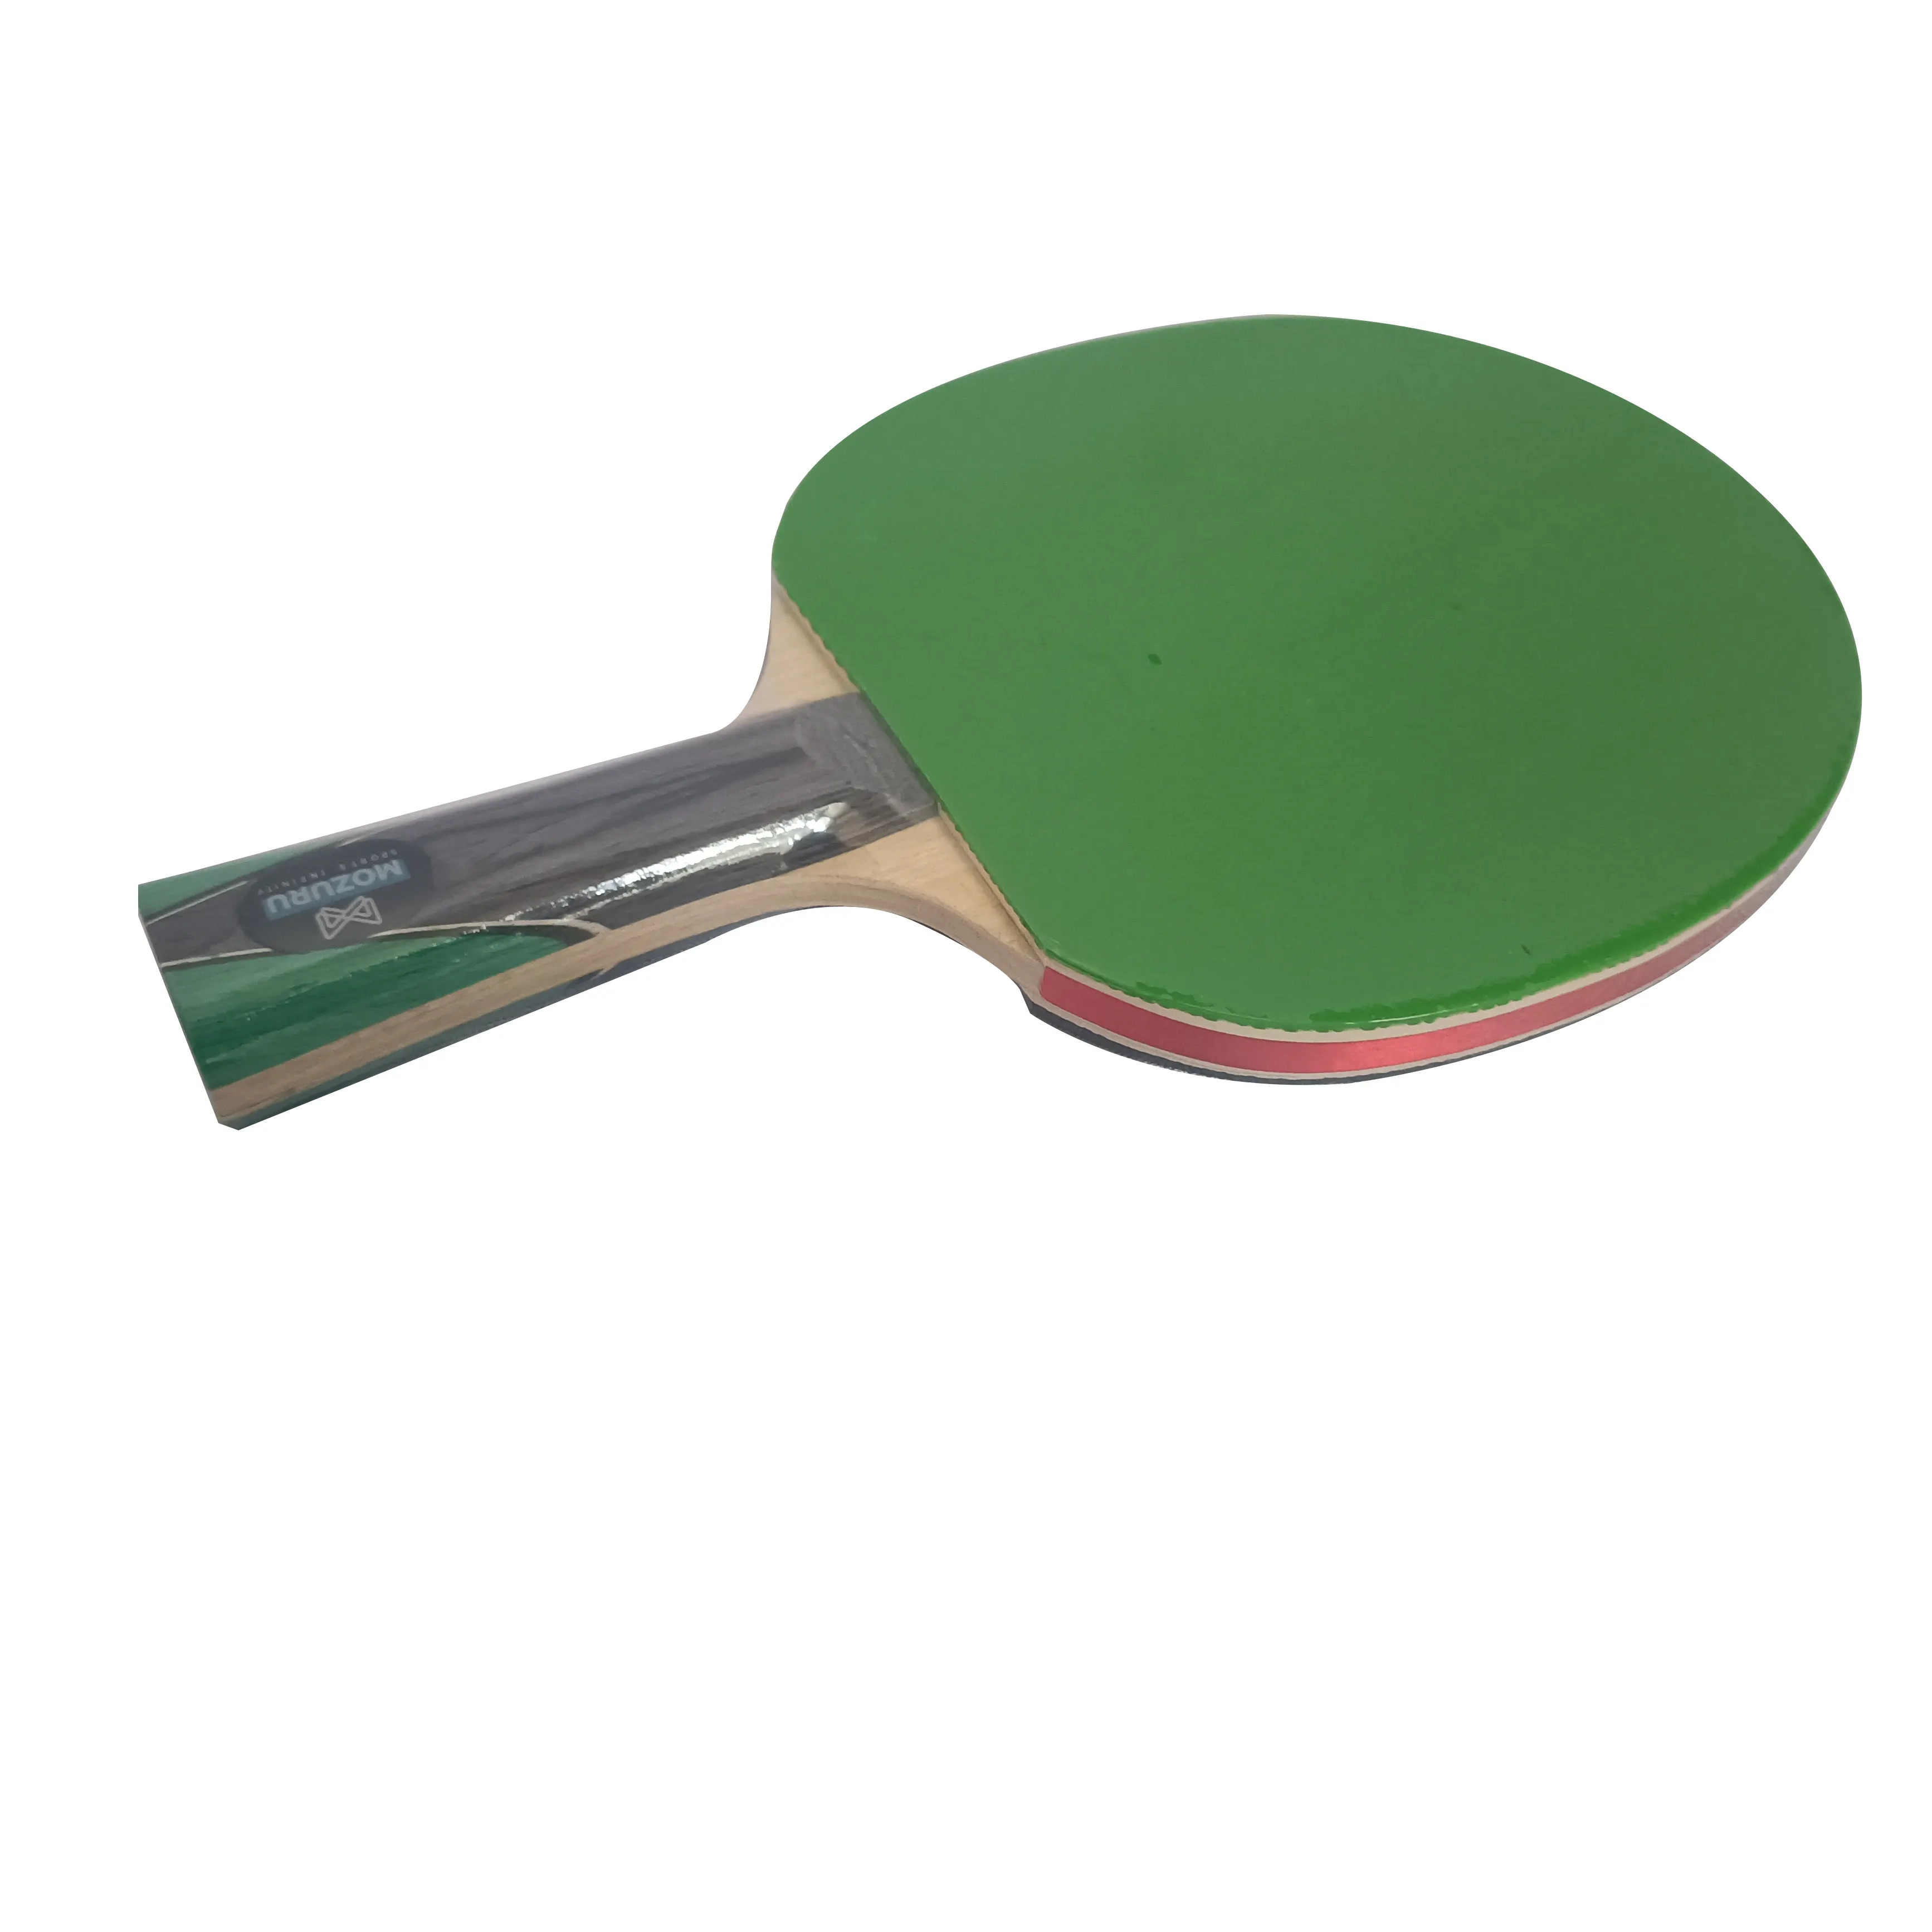 Vente en gros de raquettes de ping-pong professionnelles en bois 6 étoiles